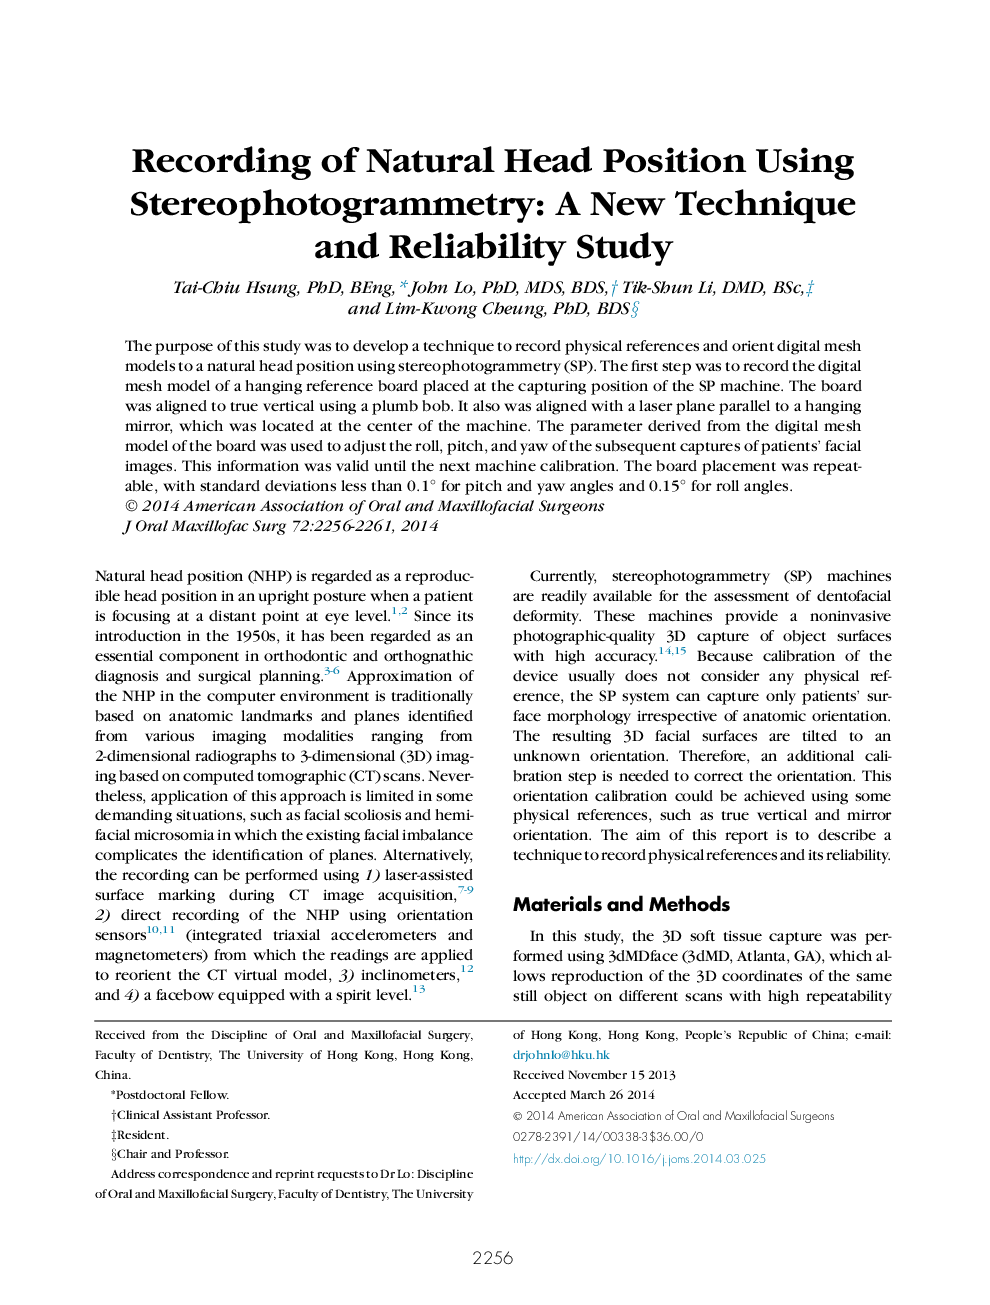 ثبت موقعیت طبیعی سر با استفاده از استروافوتوگرامتری: تکنیک جدید و بررسی قابلیت اطمینان 